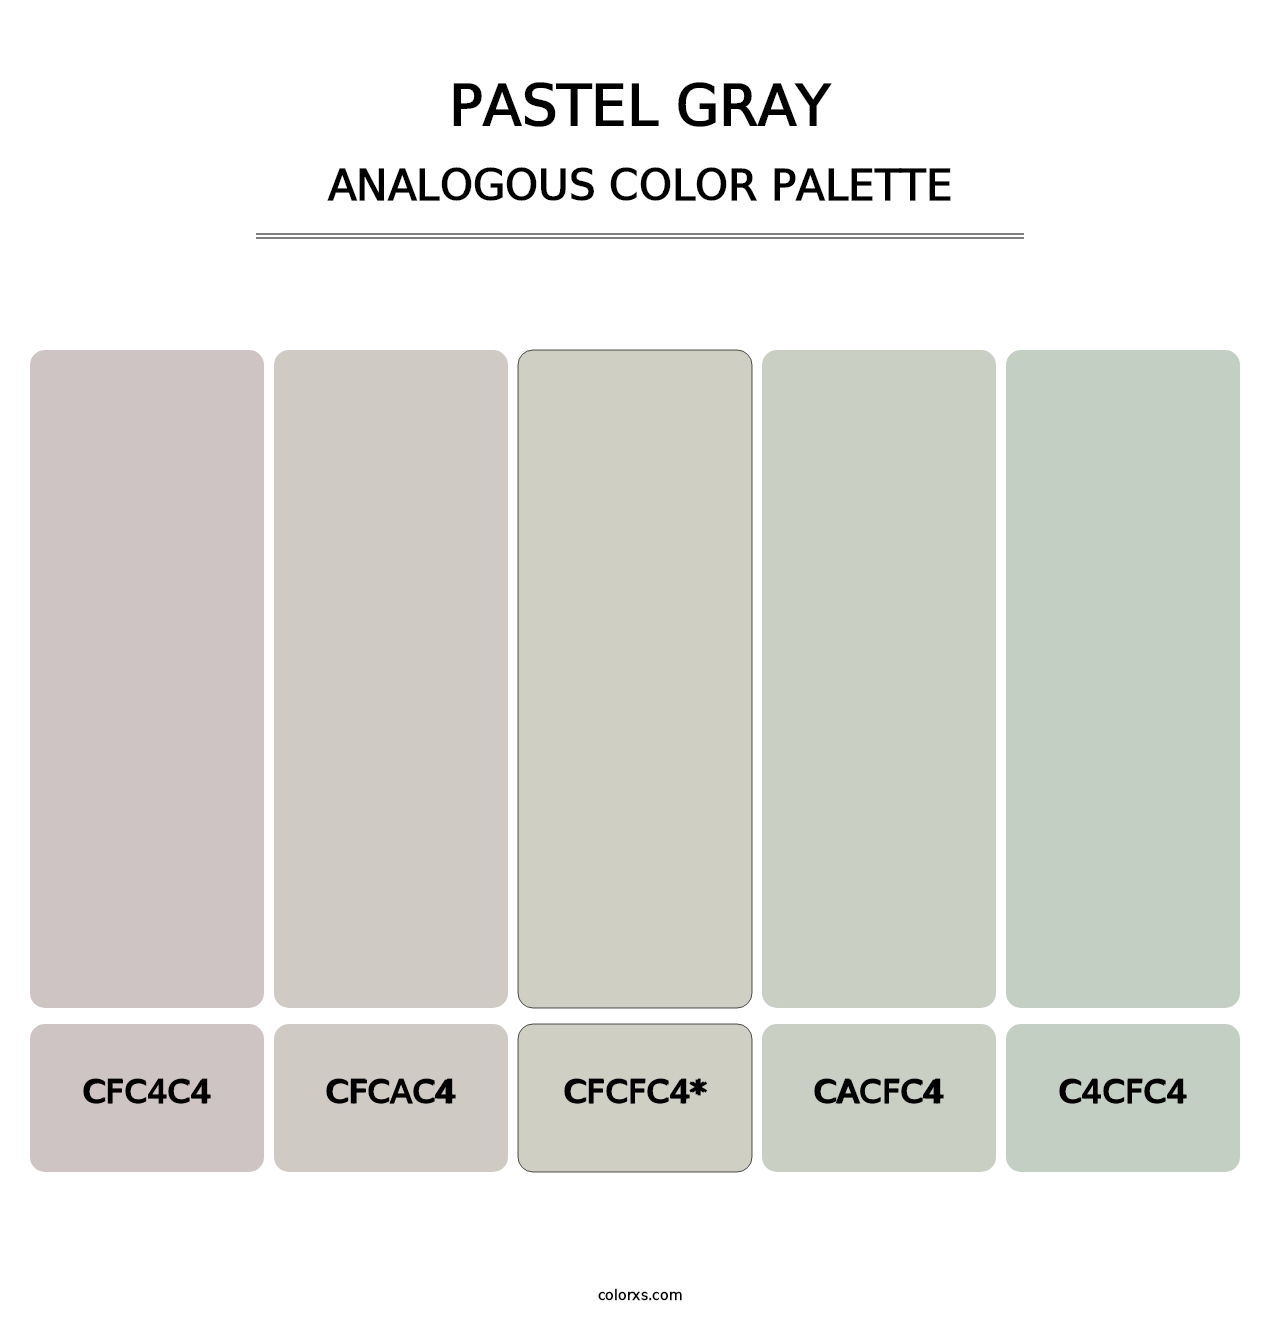 Pastel Gray - Analogous Color Palette